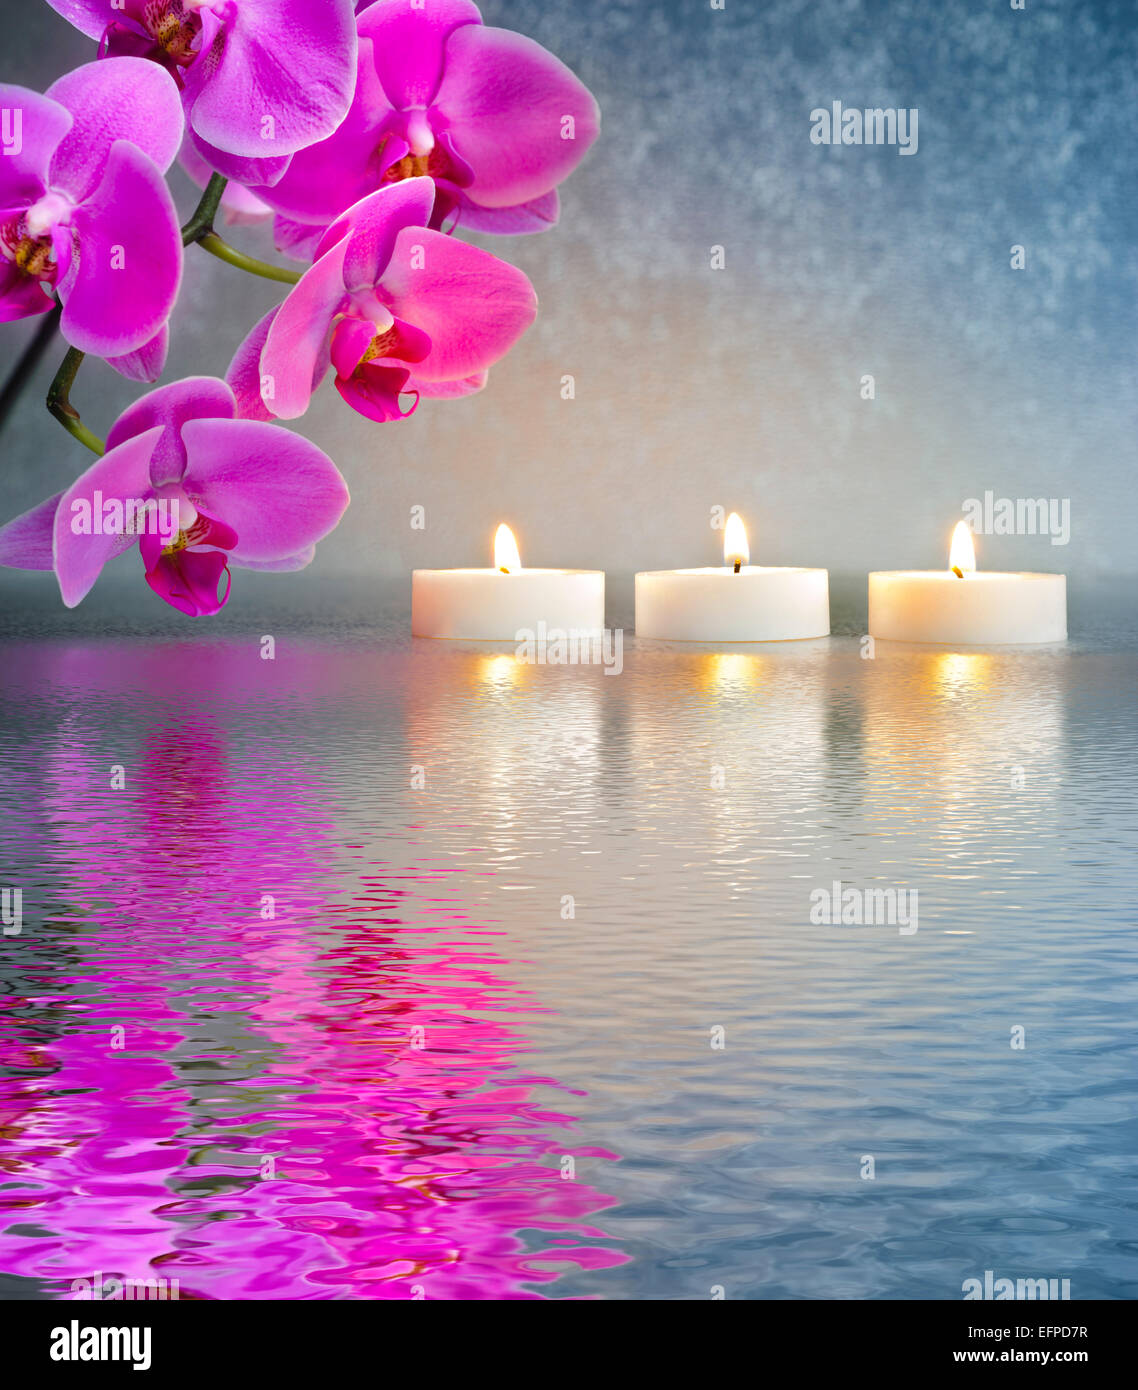 Jardin zen japonais avec des bougies dans l'eau mise en miroir Banque D'Images